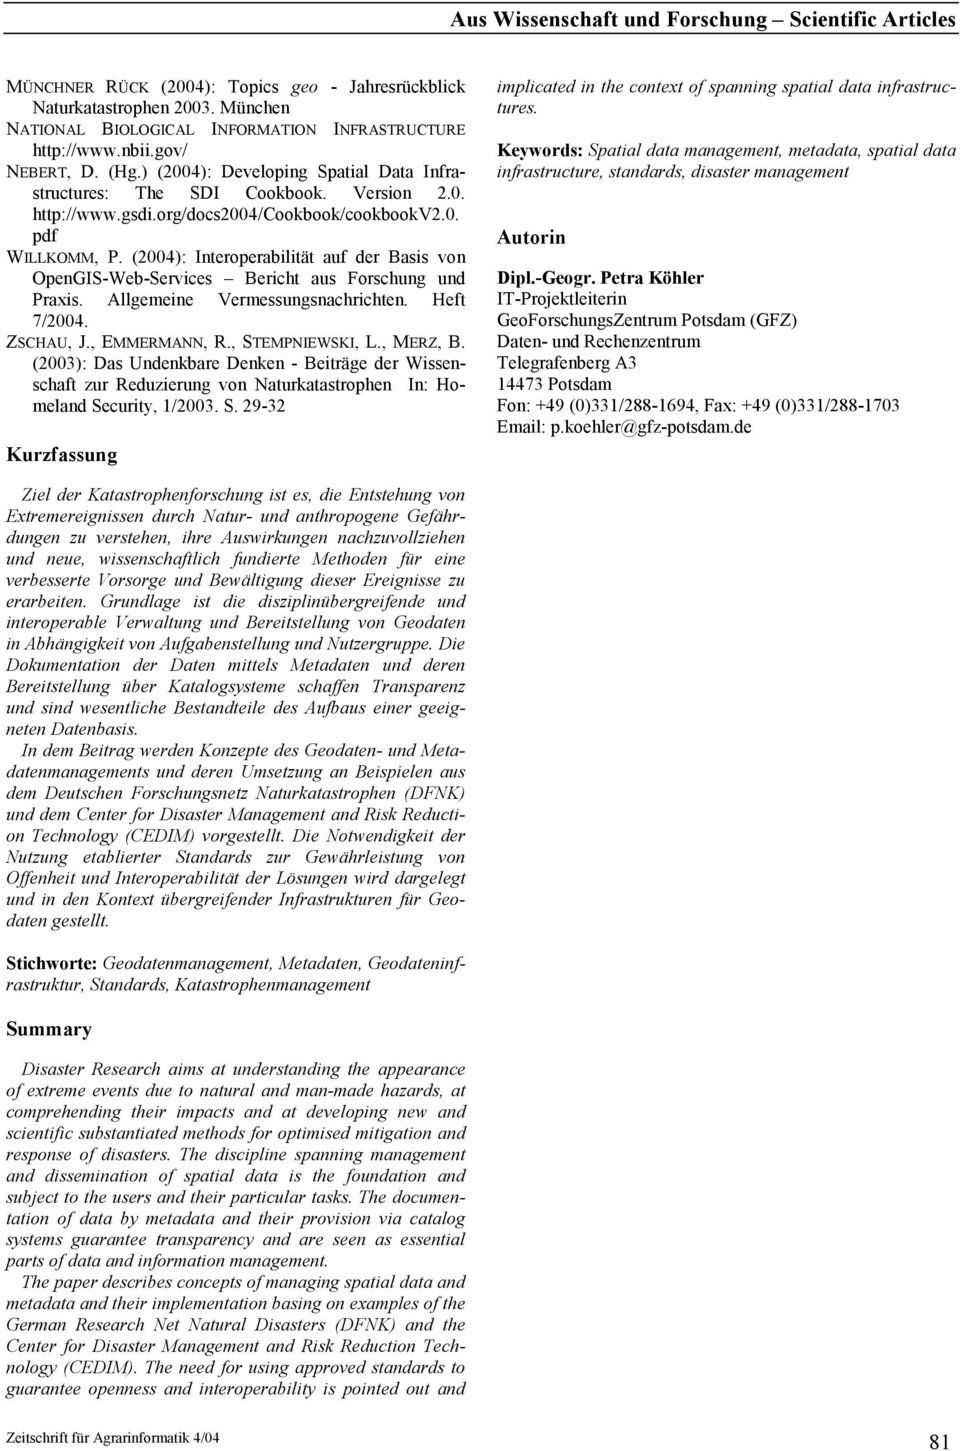 (2004): Interoperabilität auf der Basis von OpenGIS-Web-Services Bericht aus Forschung und Praxis. Allgemeine Vermessungsnachrichten. Heft 7/2004. ZSCHAU, J., EMMERMANN, R., STEMPNIEWSKI, L., MERZ, B.